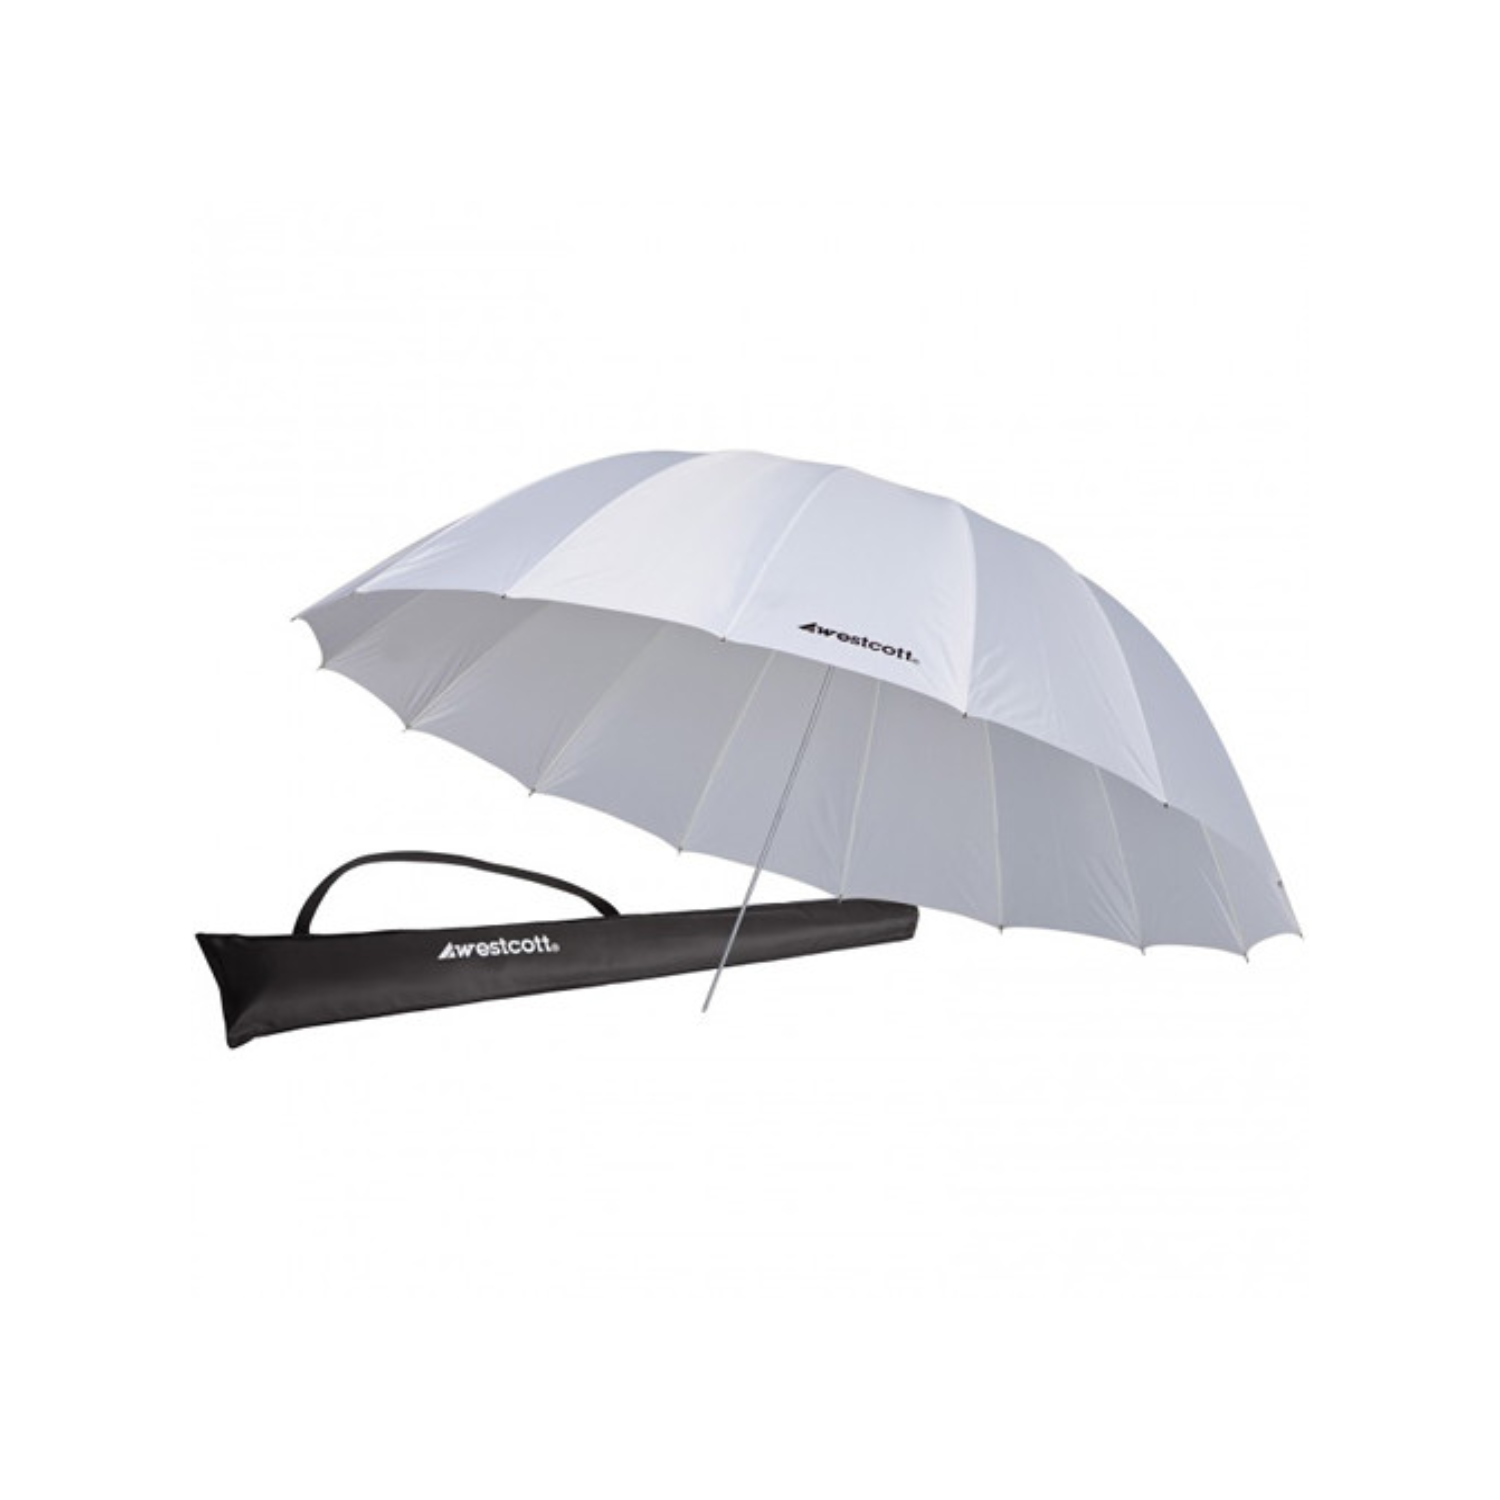 Westcott Standard Umbrella - White Diffusion (7') - Open Box